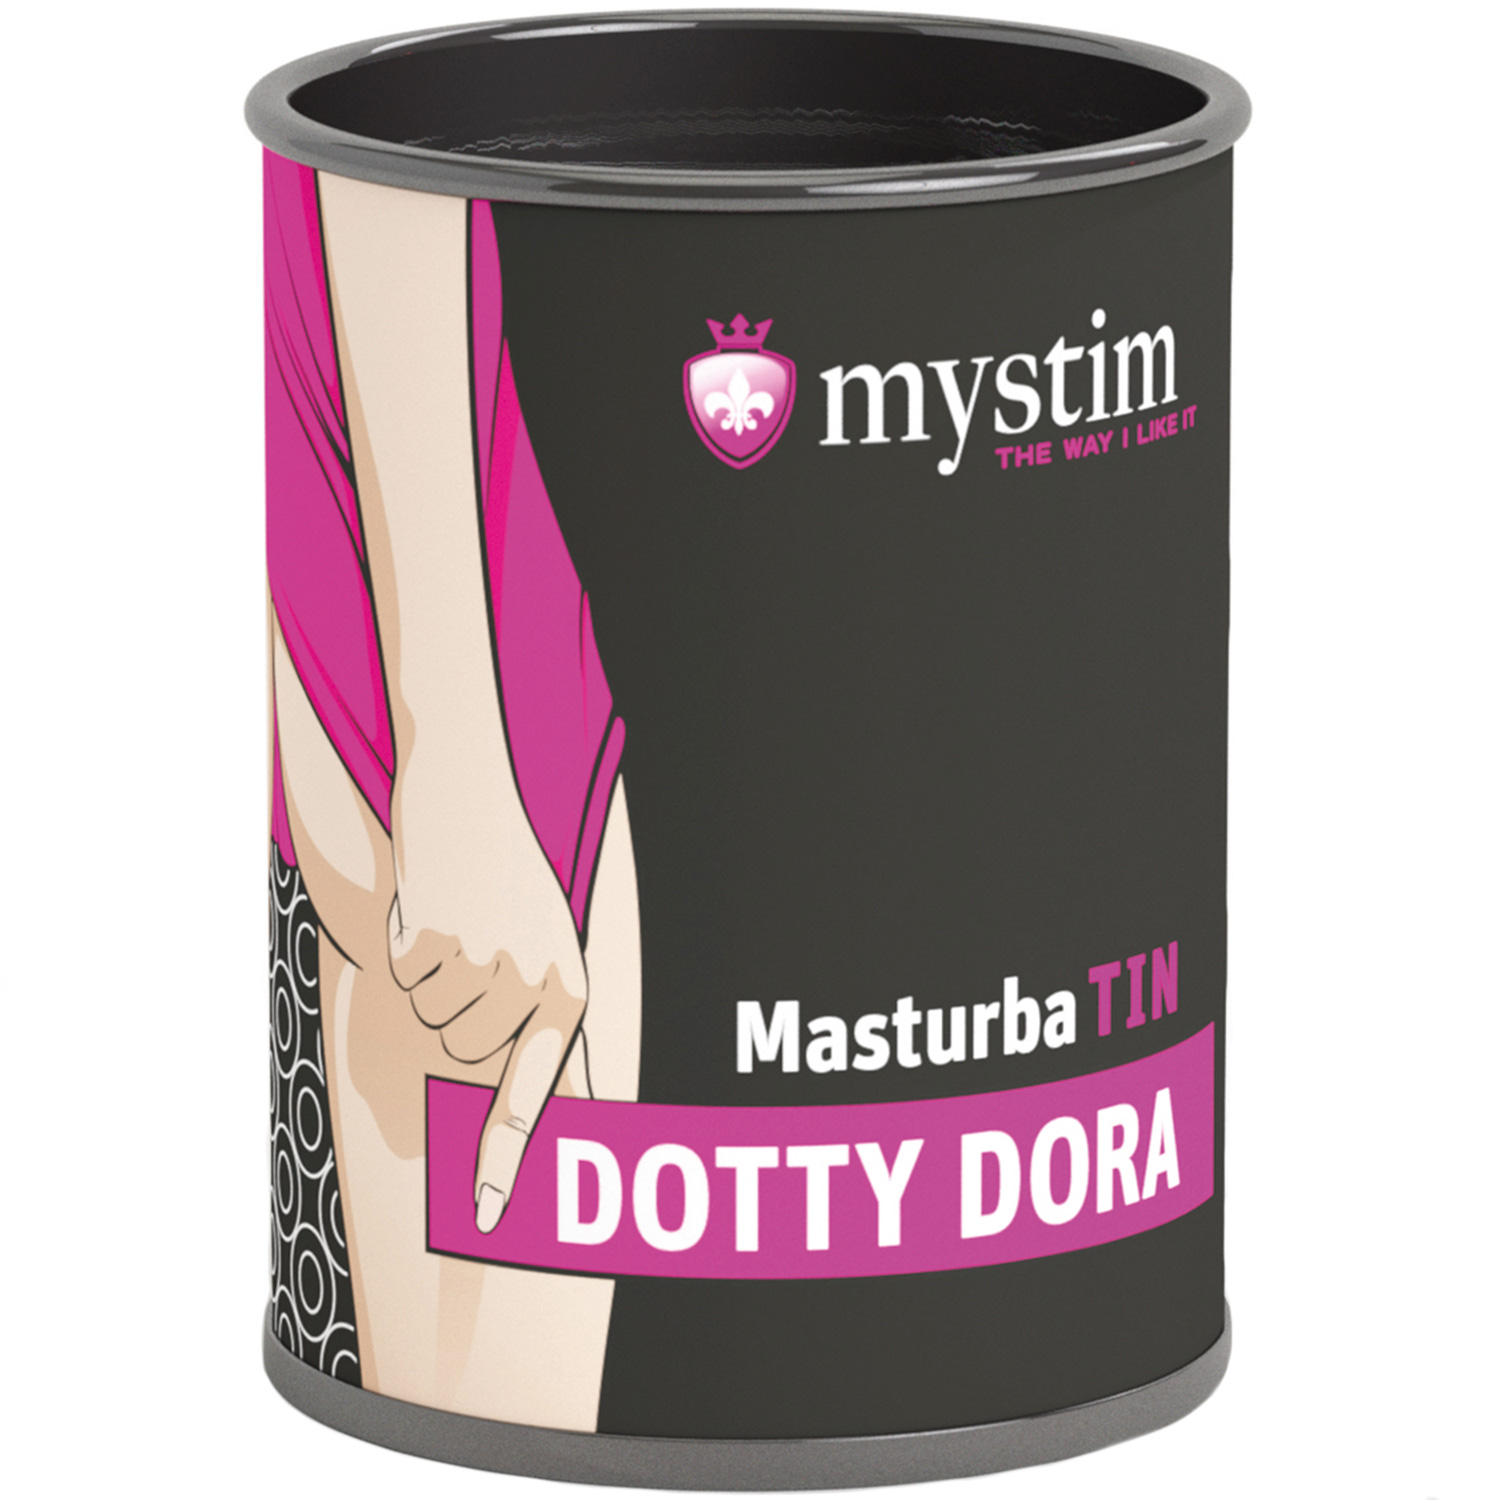 Mystim Dotty Dora MasturbaTIN - White